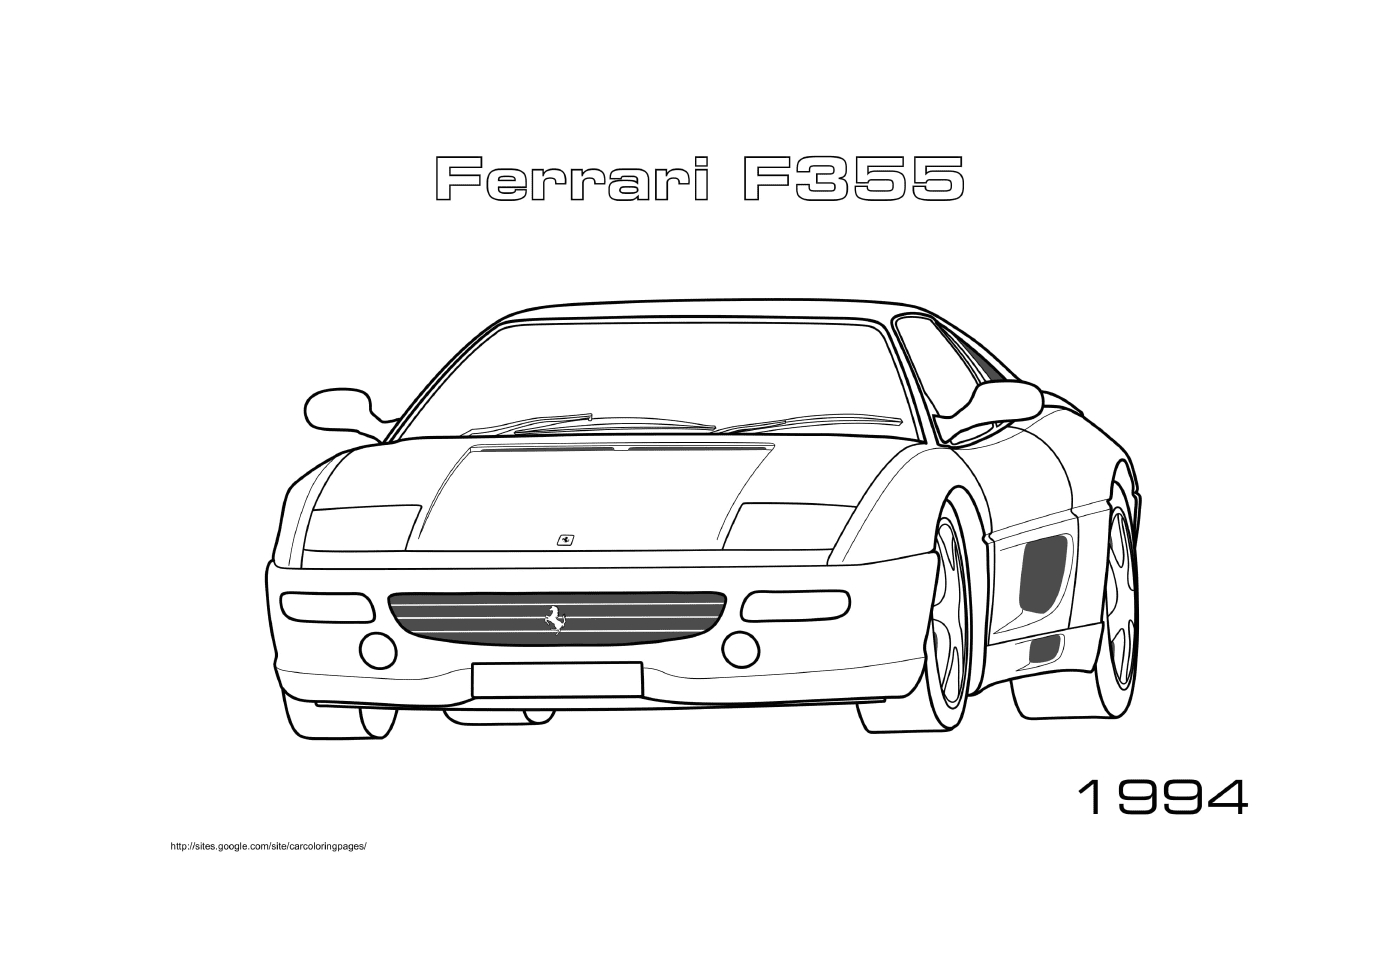  Ferrari carro F355 1994 